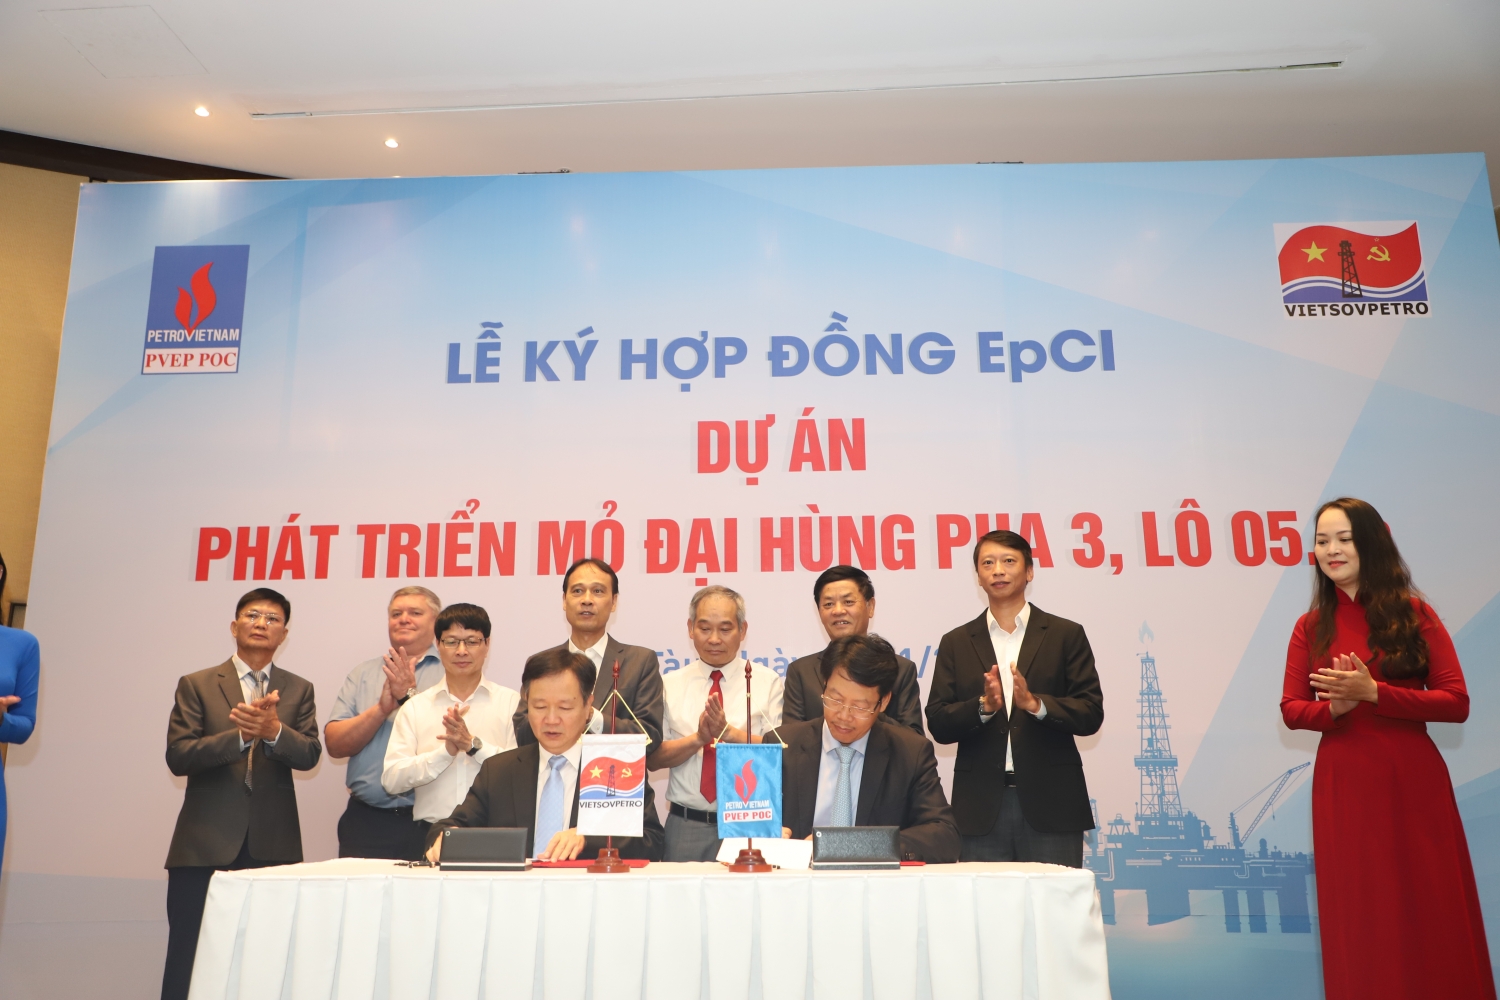 Ông Lê Đức Tuệ - Giám đốc PVEP POC và ông Vũ Mai Khanh - Thừa ủy quyền Tổng Giám đốc Vietsovpetro ký kết hợp đồng EPCI Dự án phát triển Mỏ Đại Hùng Pha 3, lô 05.1a